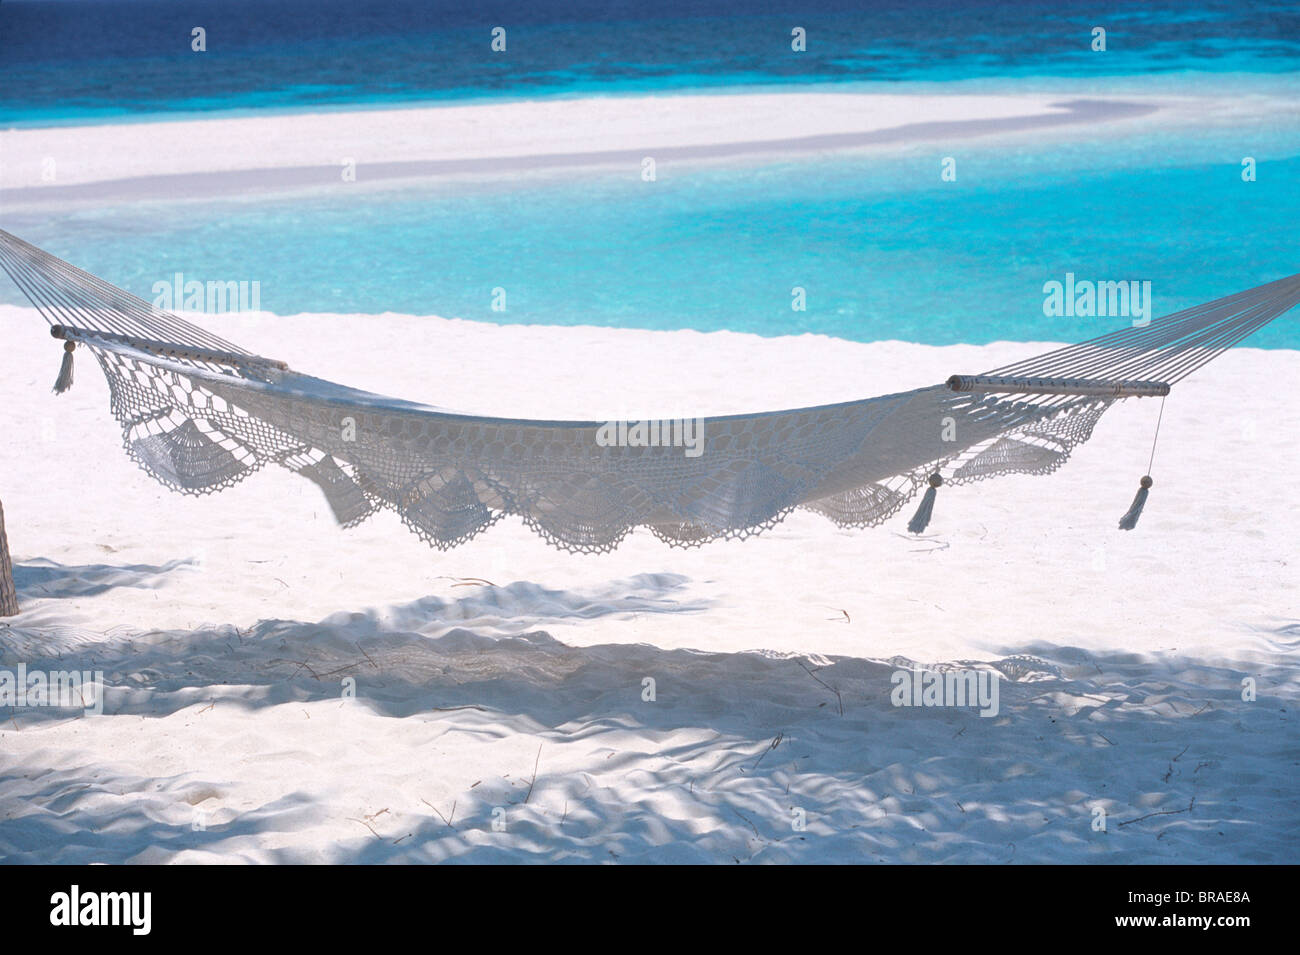 Amaca sulla spiaggia, Maldive, Oceano Indiano, Asia Foto Stock